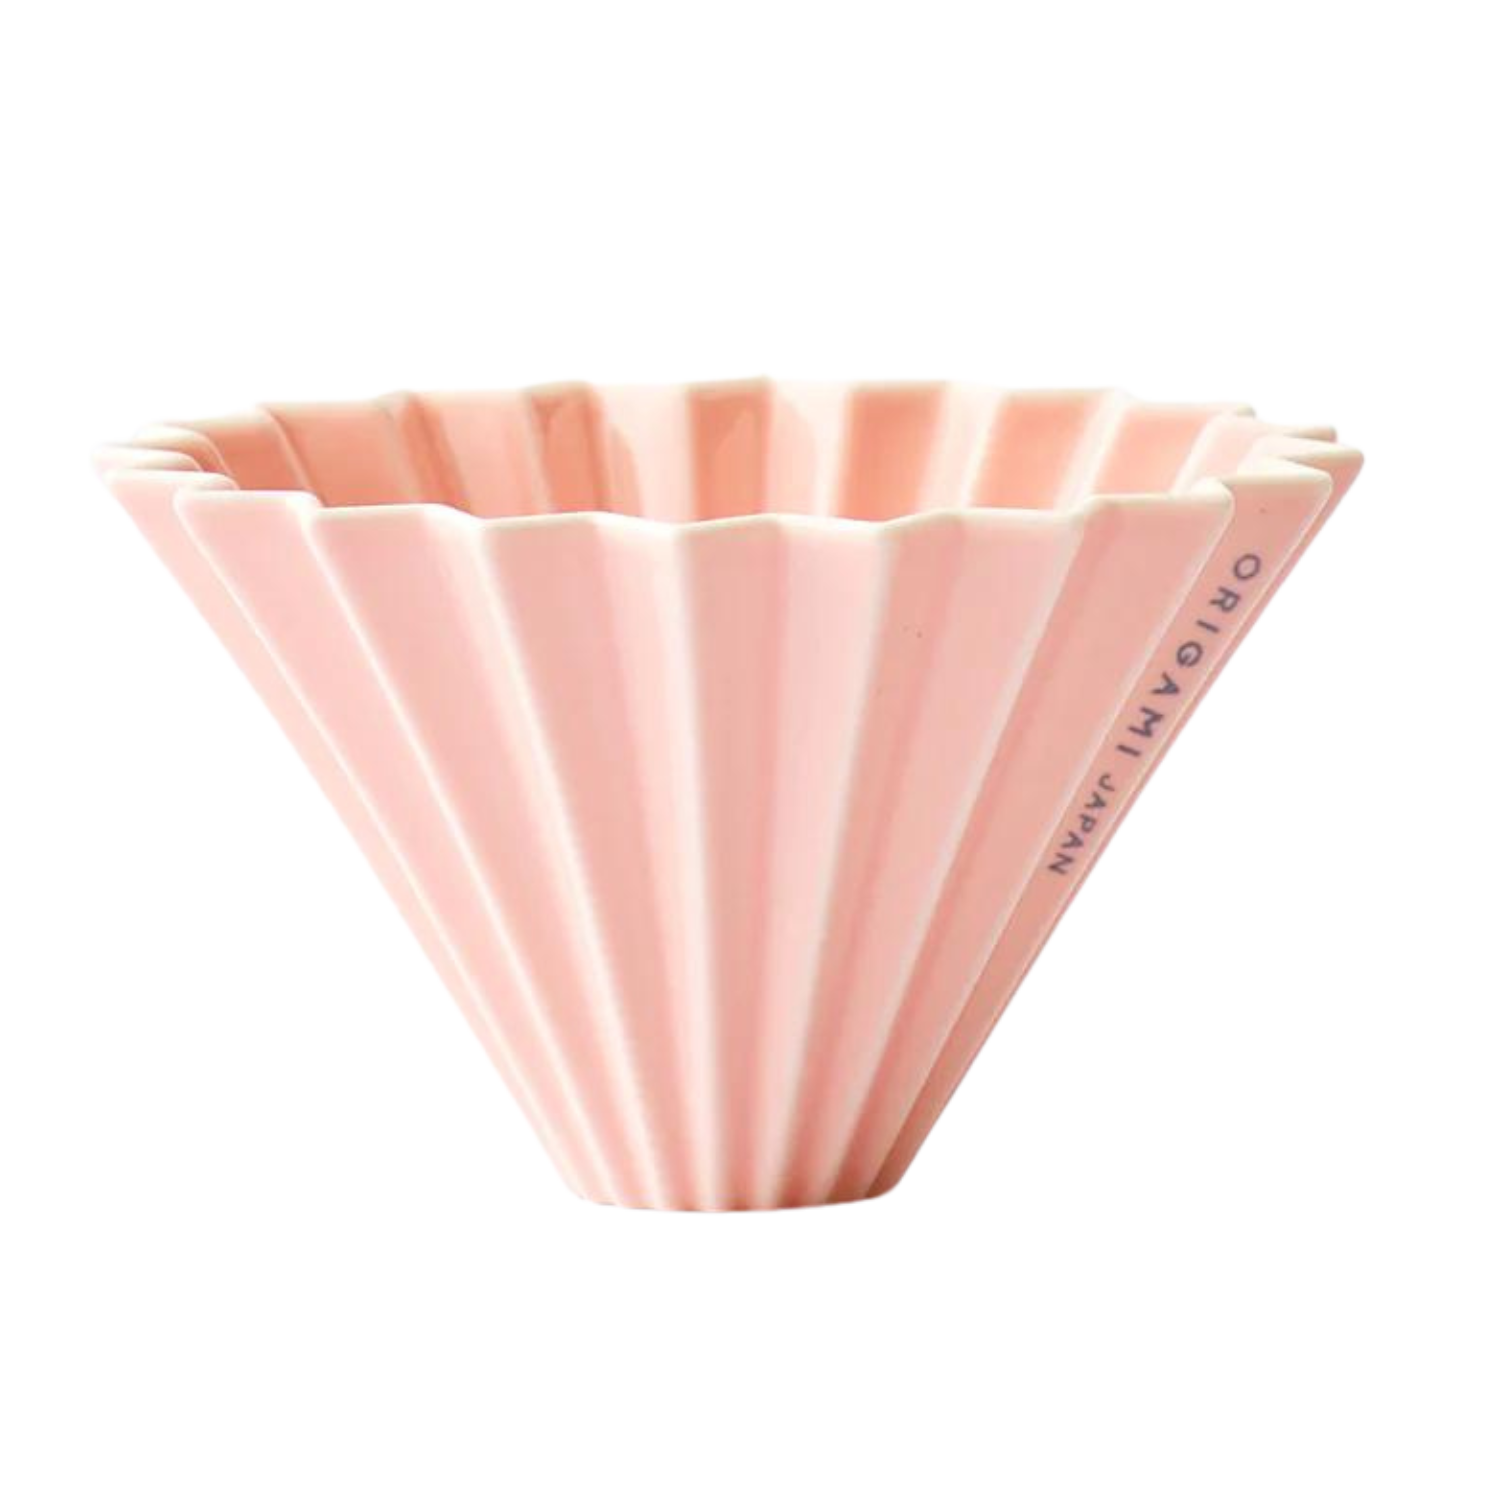 Origami kohvivalmistaja - Matt roosa